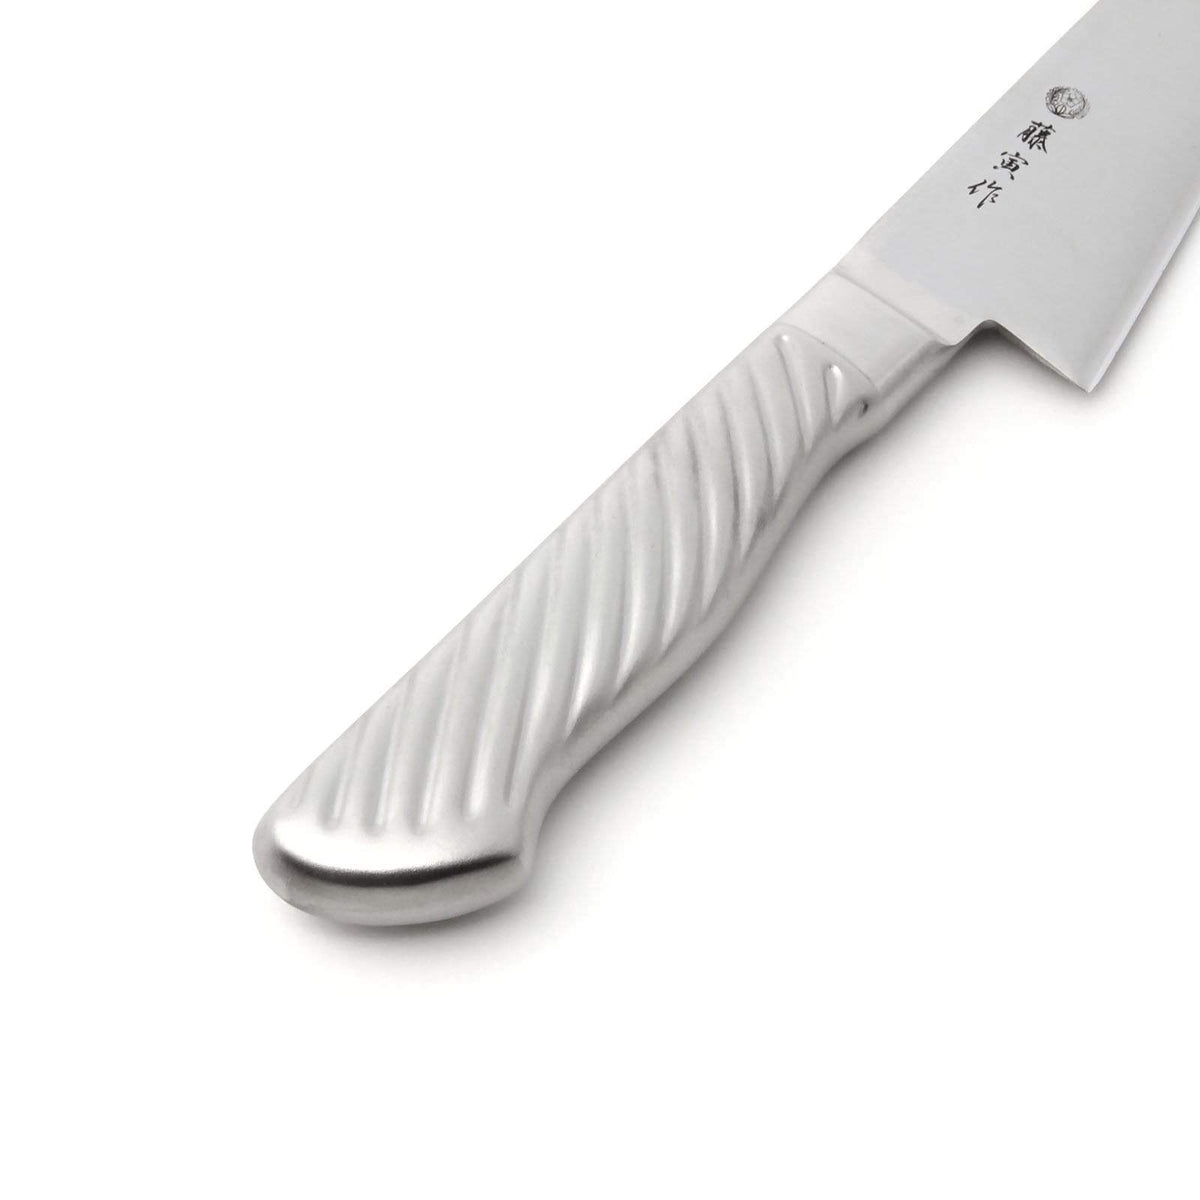 Tojiro Fujitora DP 2-Layer Honesuki Knife with Stainless Steel Handle 150mm FU-885 Honesuki Knives